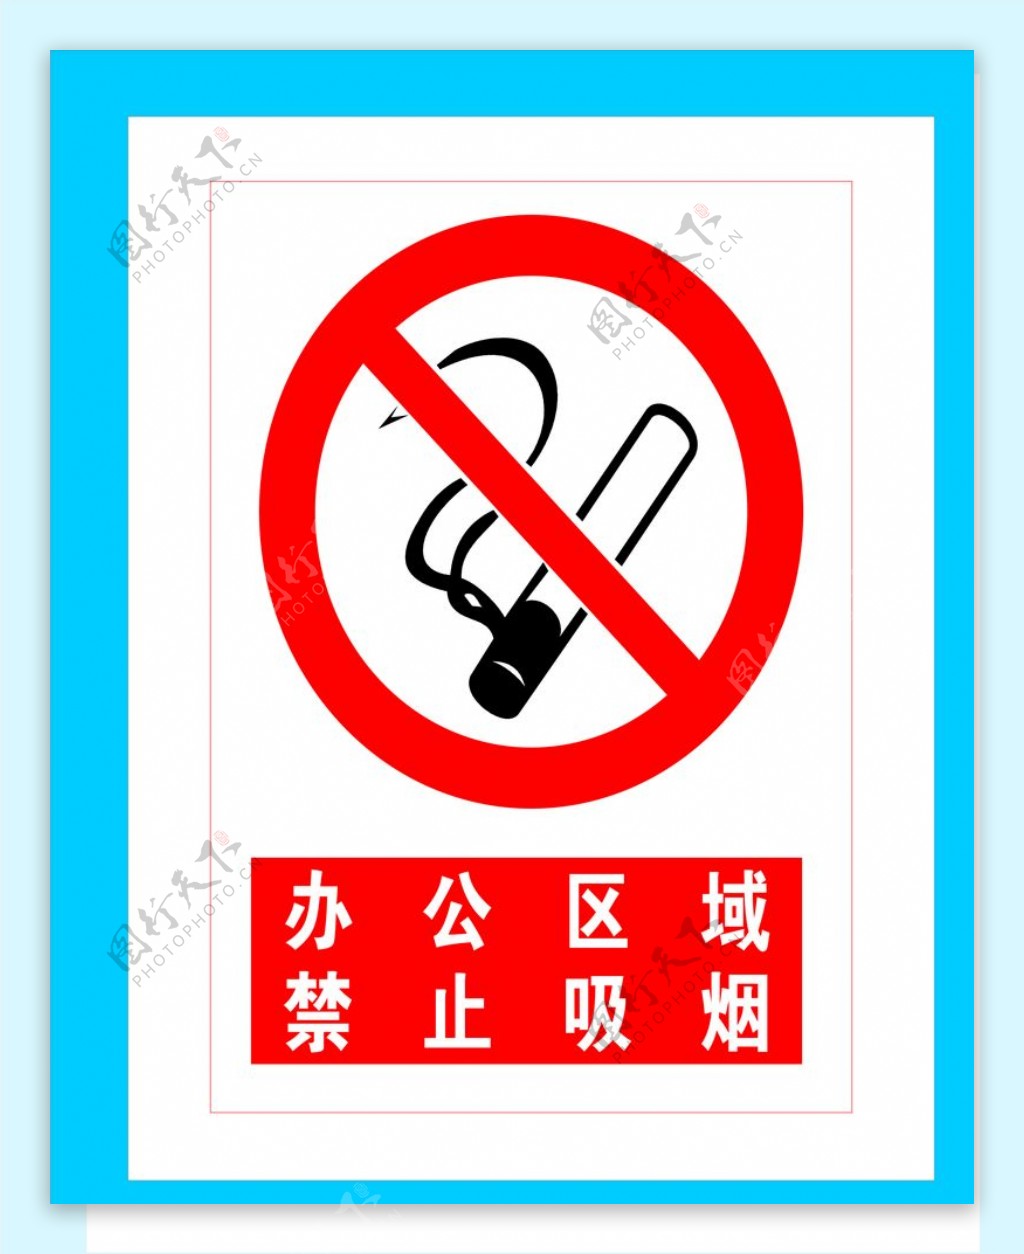 办公区域禁止吸烟